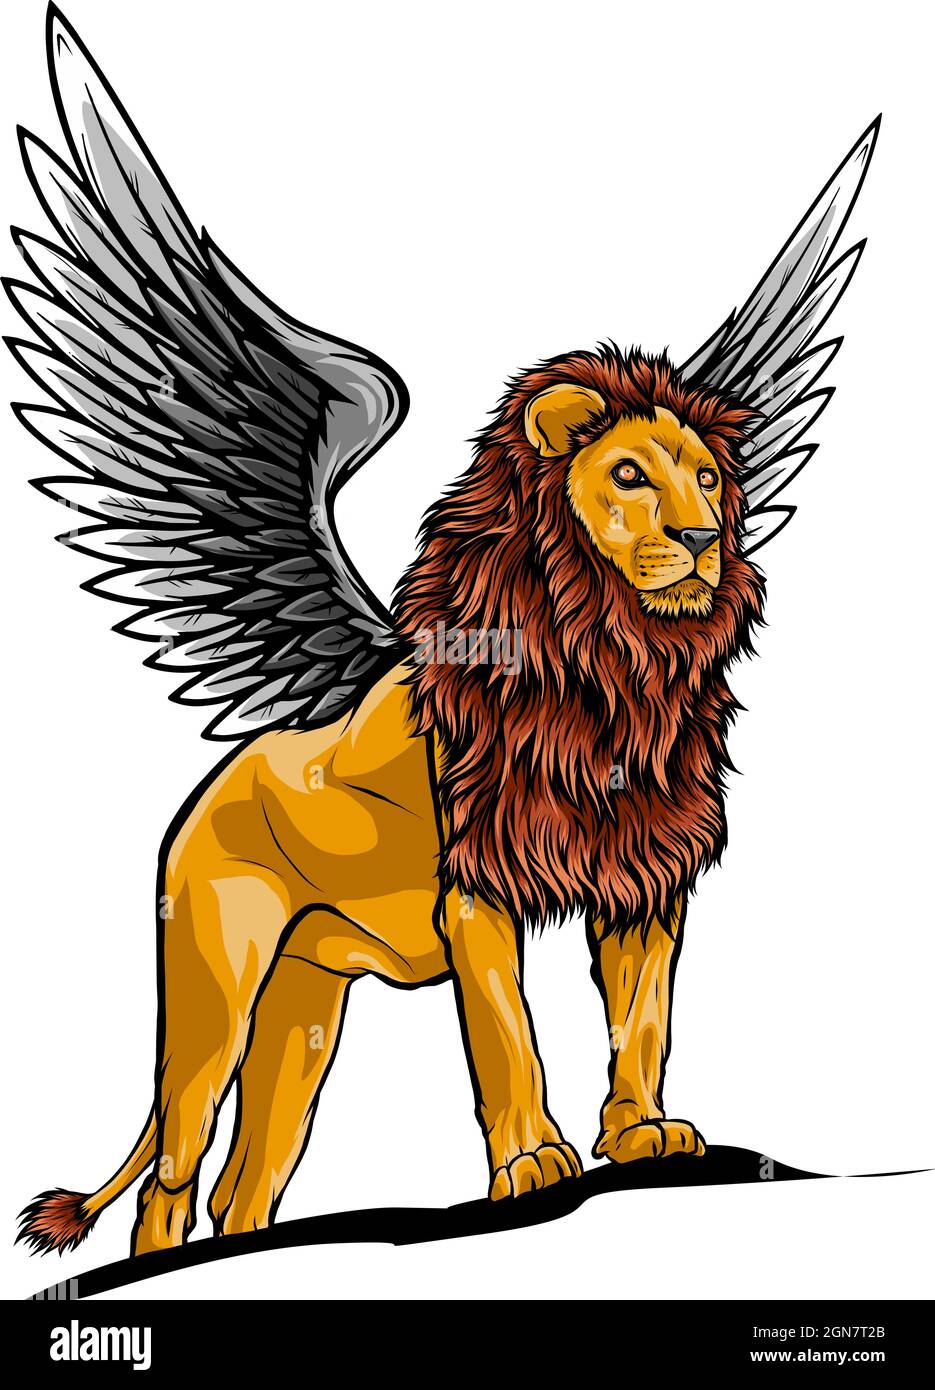 Illustrazione del leone alato nella progettazione vettoriale Illustrazione Vettoriale